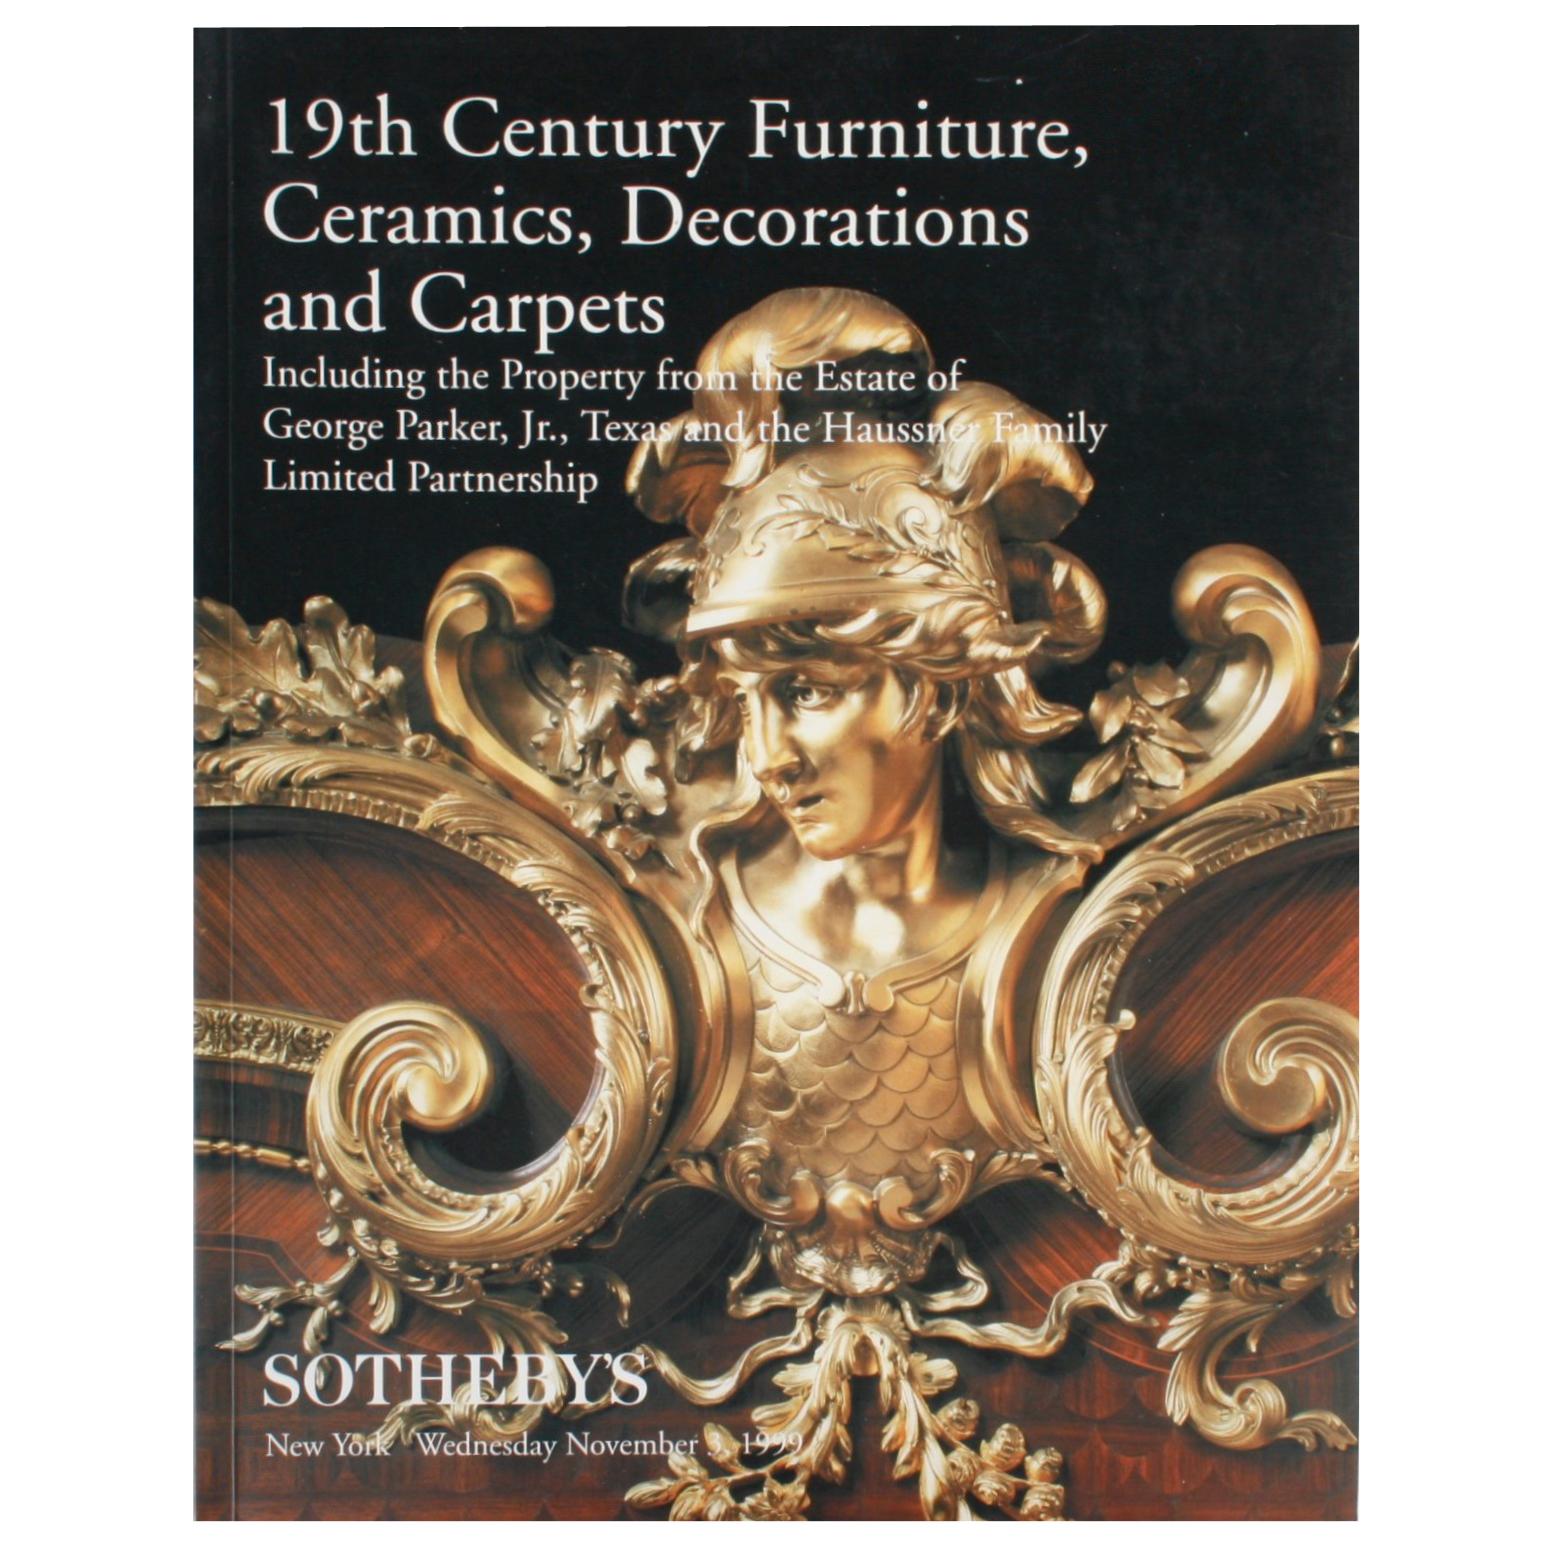 Sotheby's Furniture, Ceramics, Decorations, Estate of George Parker, Jr.